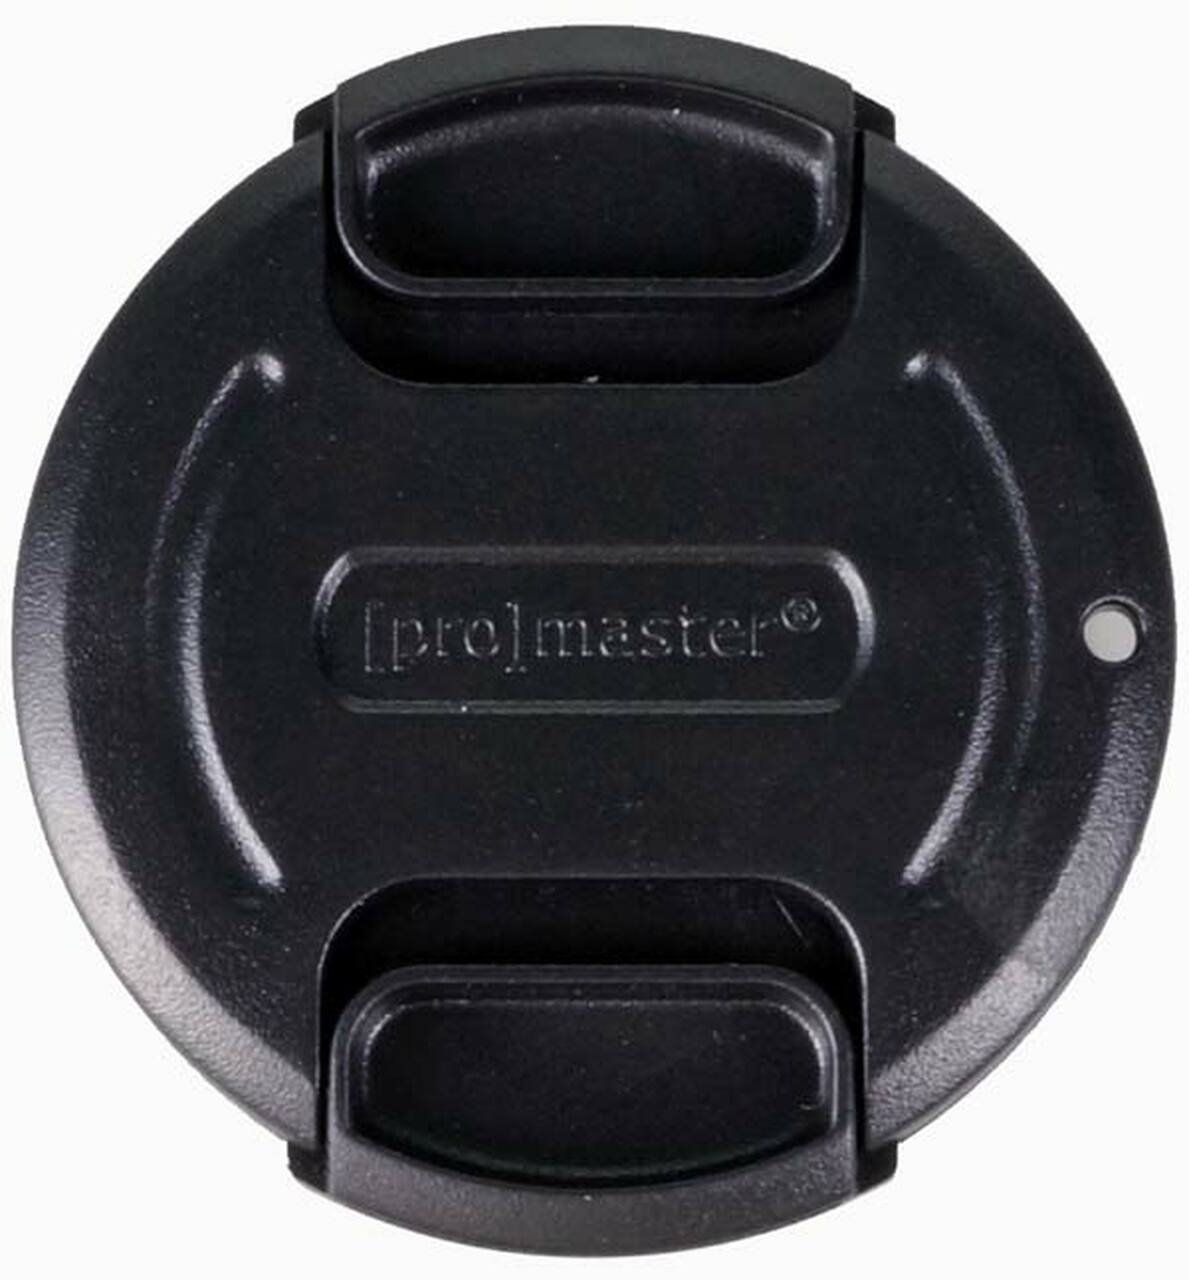 Promaster 4550 55mm Lens Cap